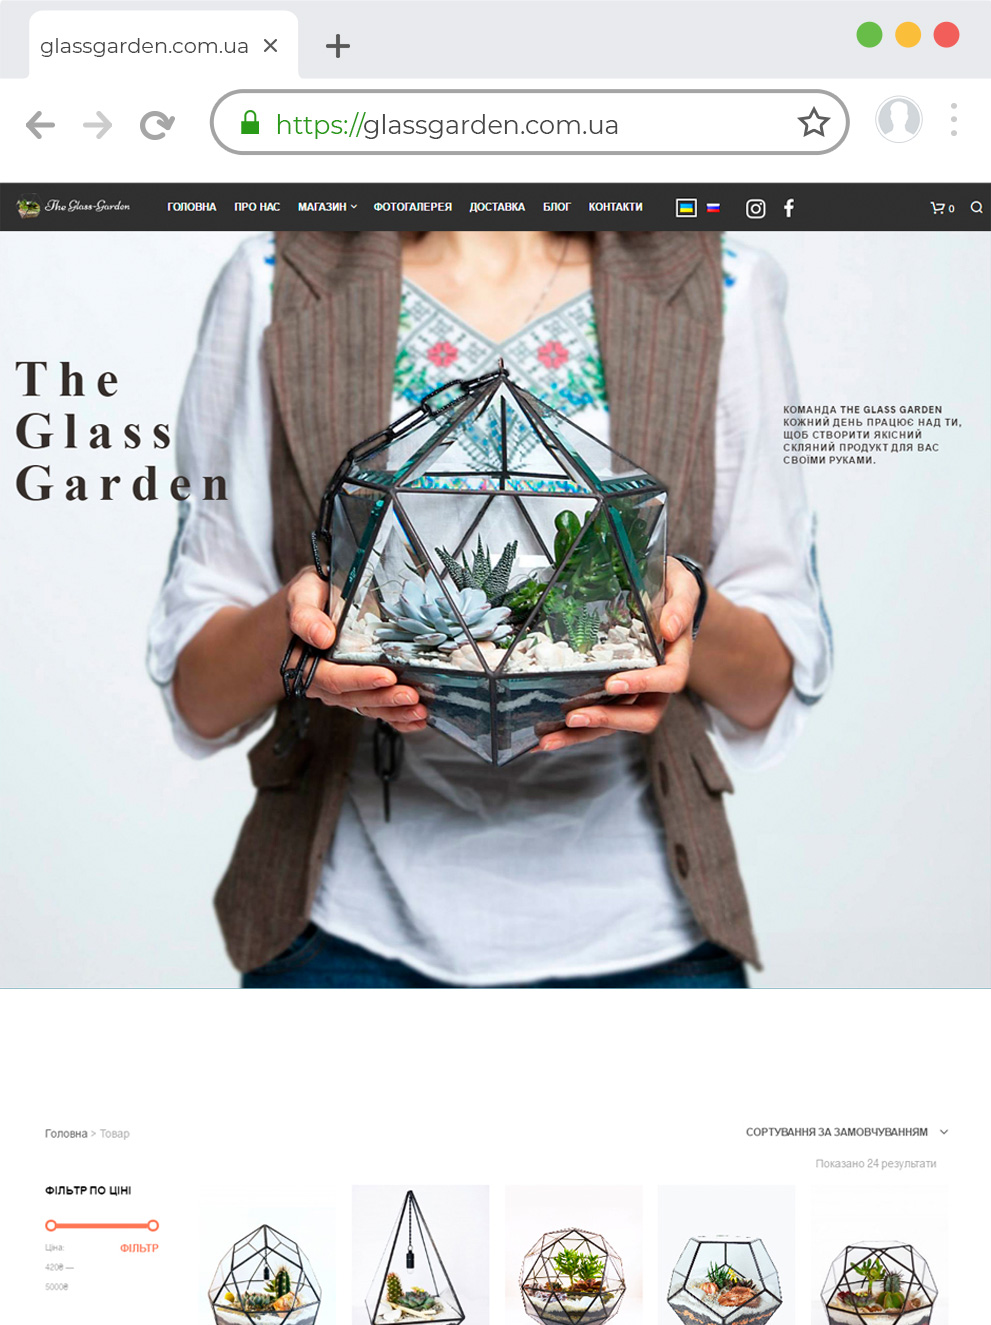 Разработка сайта на двух языках ЦМС Wordpress Украинского дизайнера Русланы Петровской - The Glass Garden